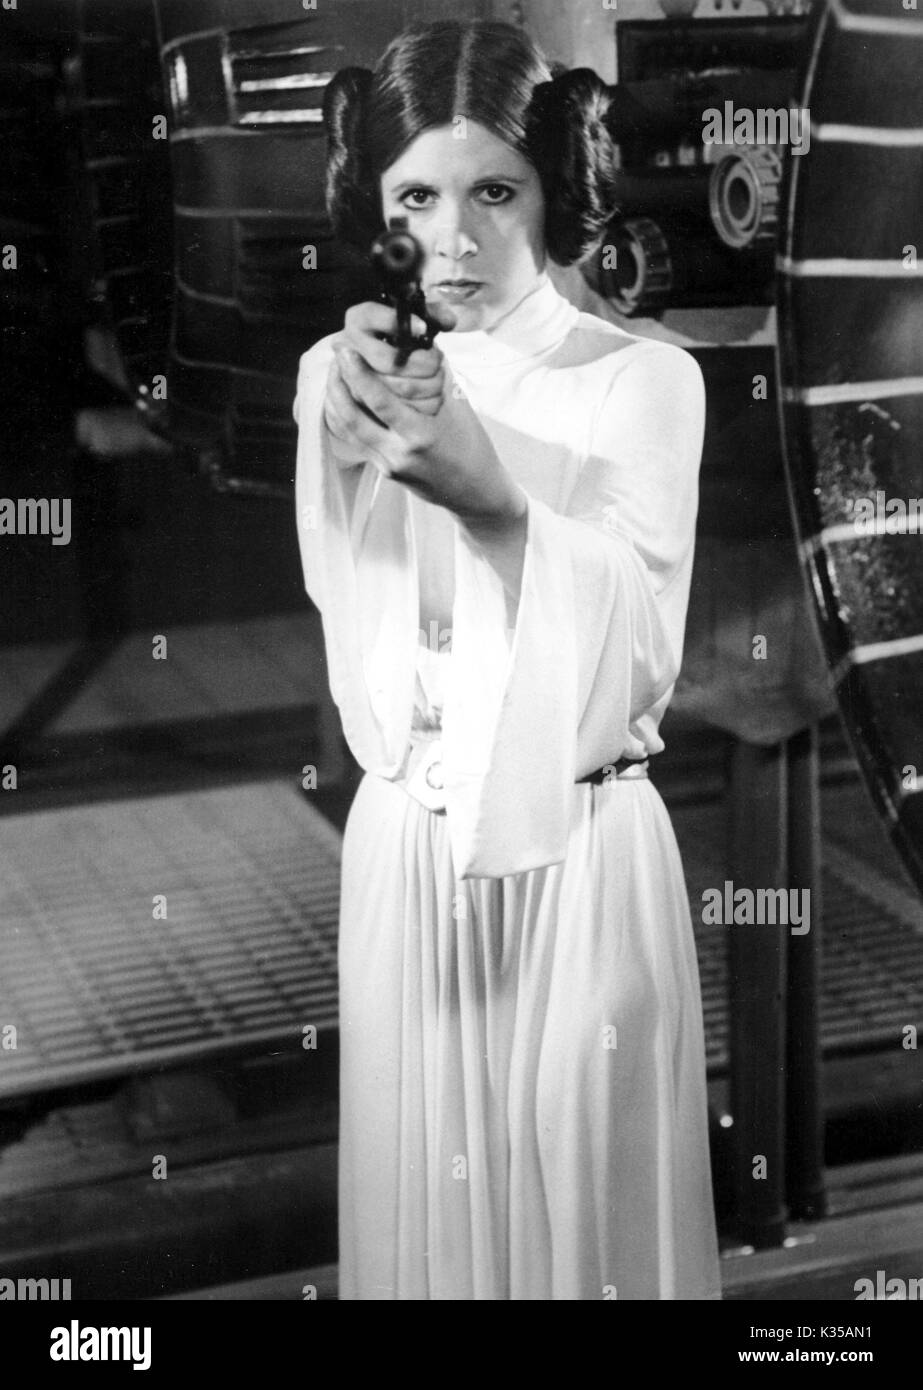 Foto muss Gutgeschrieben © von Alpha 070000 (1977) Carrie Fisher als  Prinzessin Leia in Star Wars Film Stockfotografie - Alamy